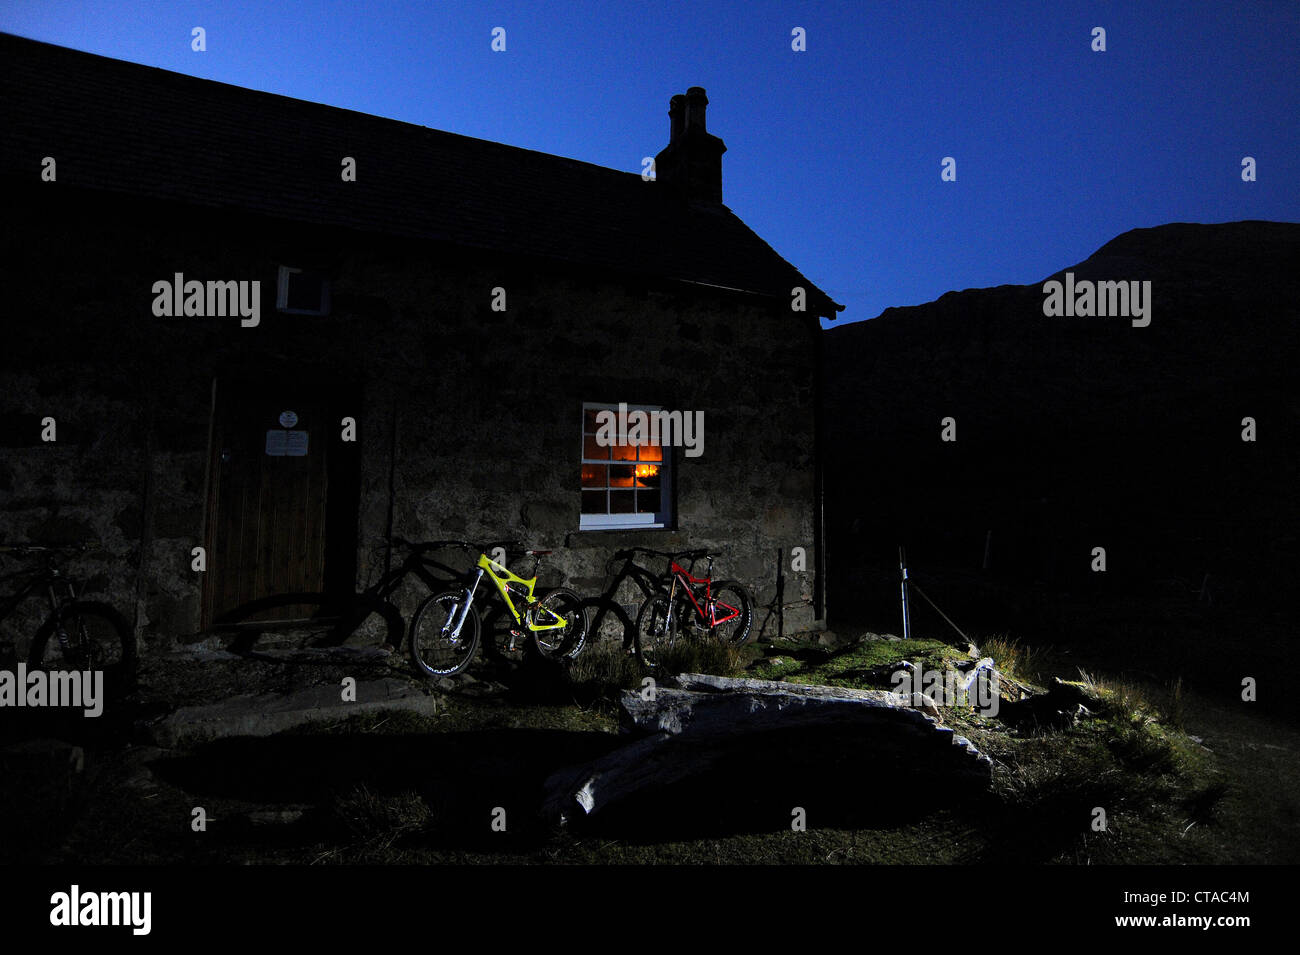 Deux vélos de montagne contre le mur d'un bothy dans les montagnes de l'Ecosse au crépuscule. Banque D'Images